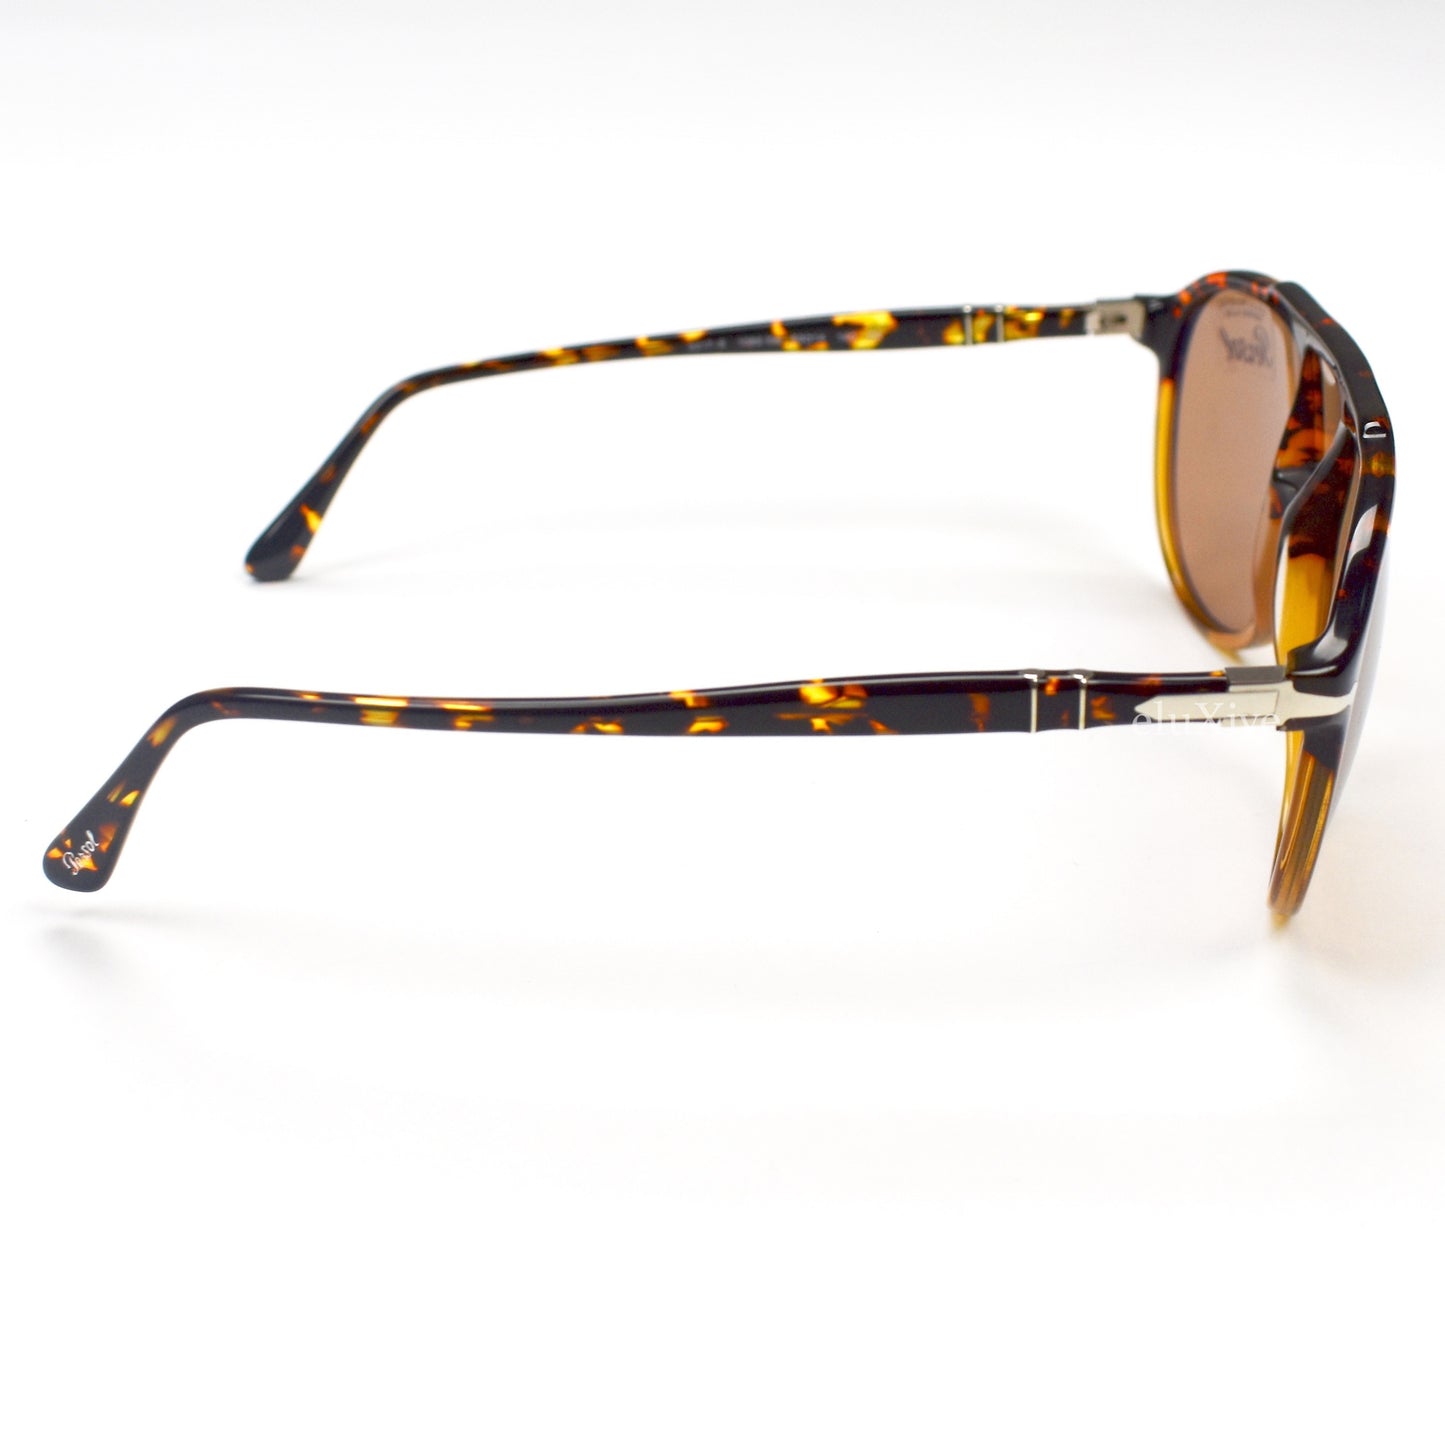 Persol - 3217-S Vintage Pilot Sunglasses (Tortoise)